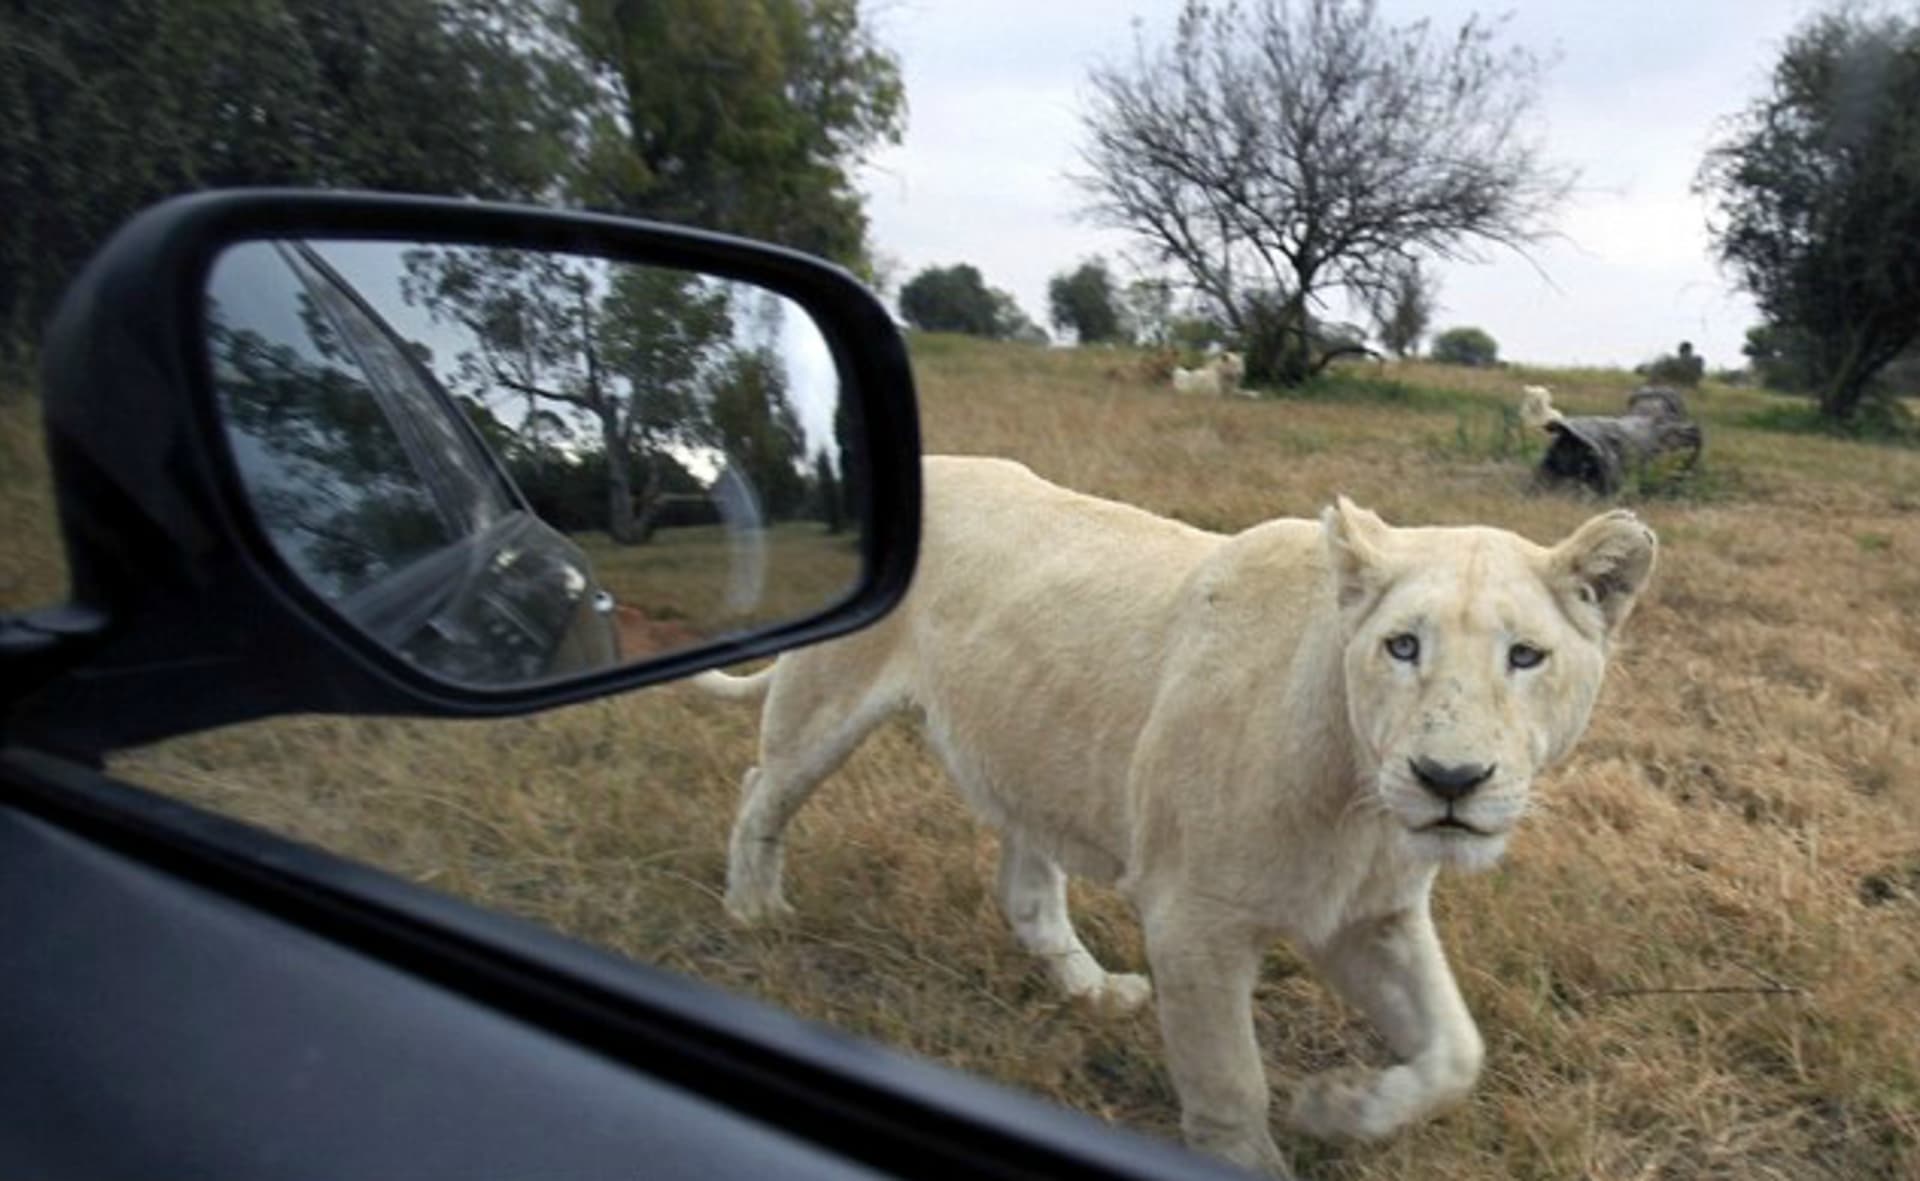 Inzeráty slibují, že si lvy můžete fotit z bezprostřední blízkosti